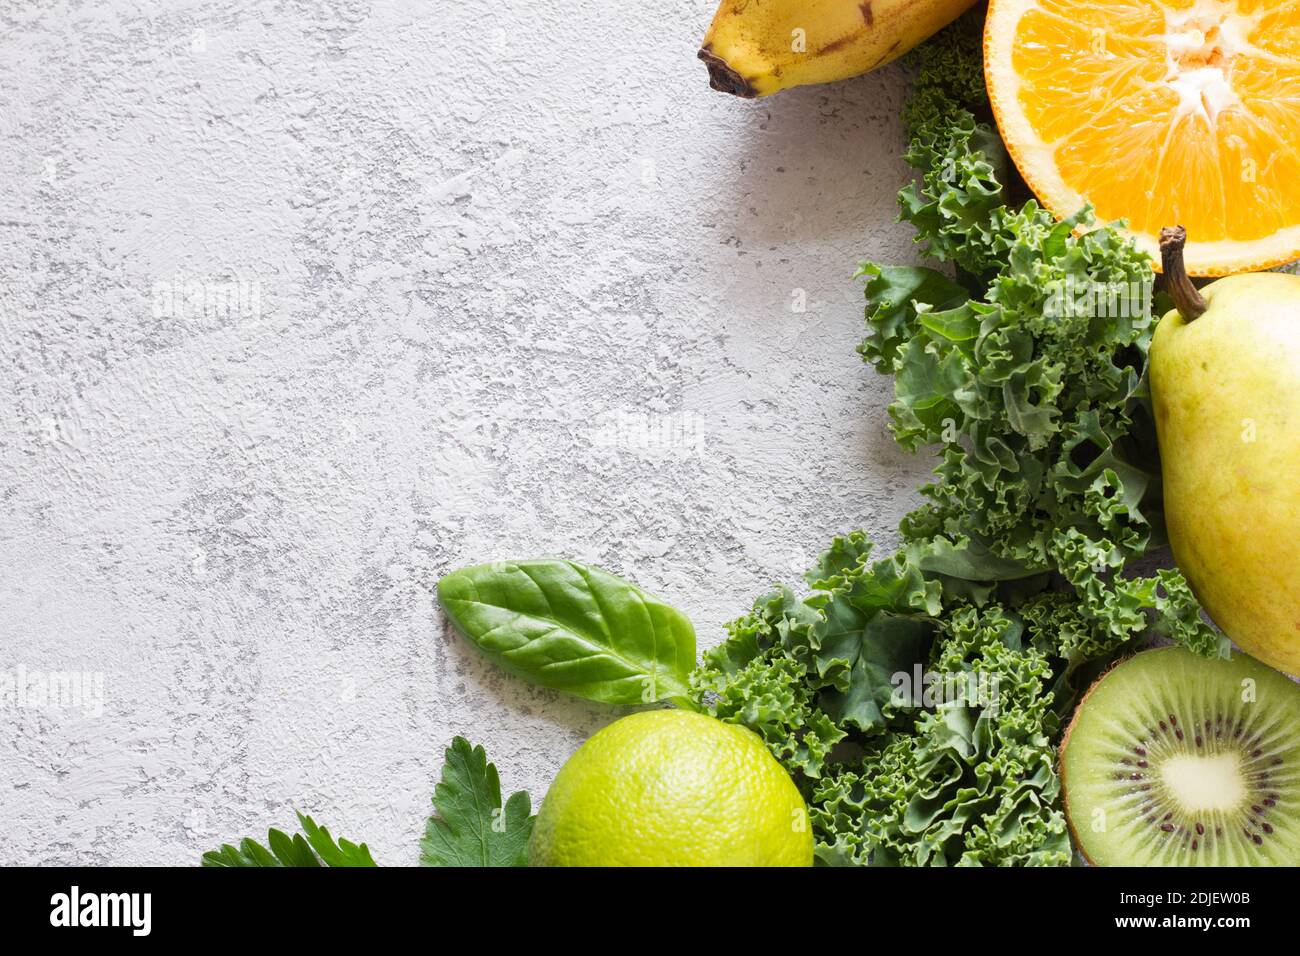 Verdure verdi e frutta su fondo di cemento, ingredienti per frullati Foto Stock